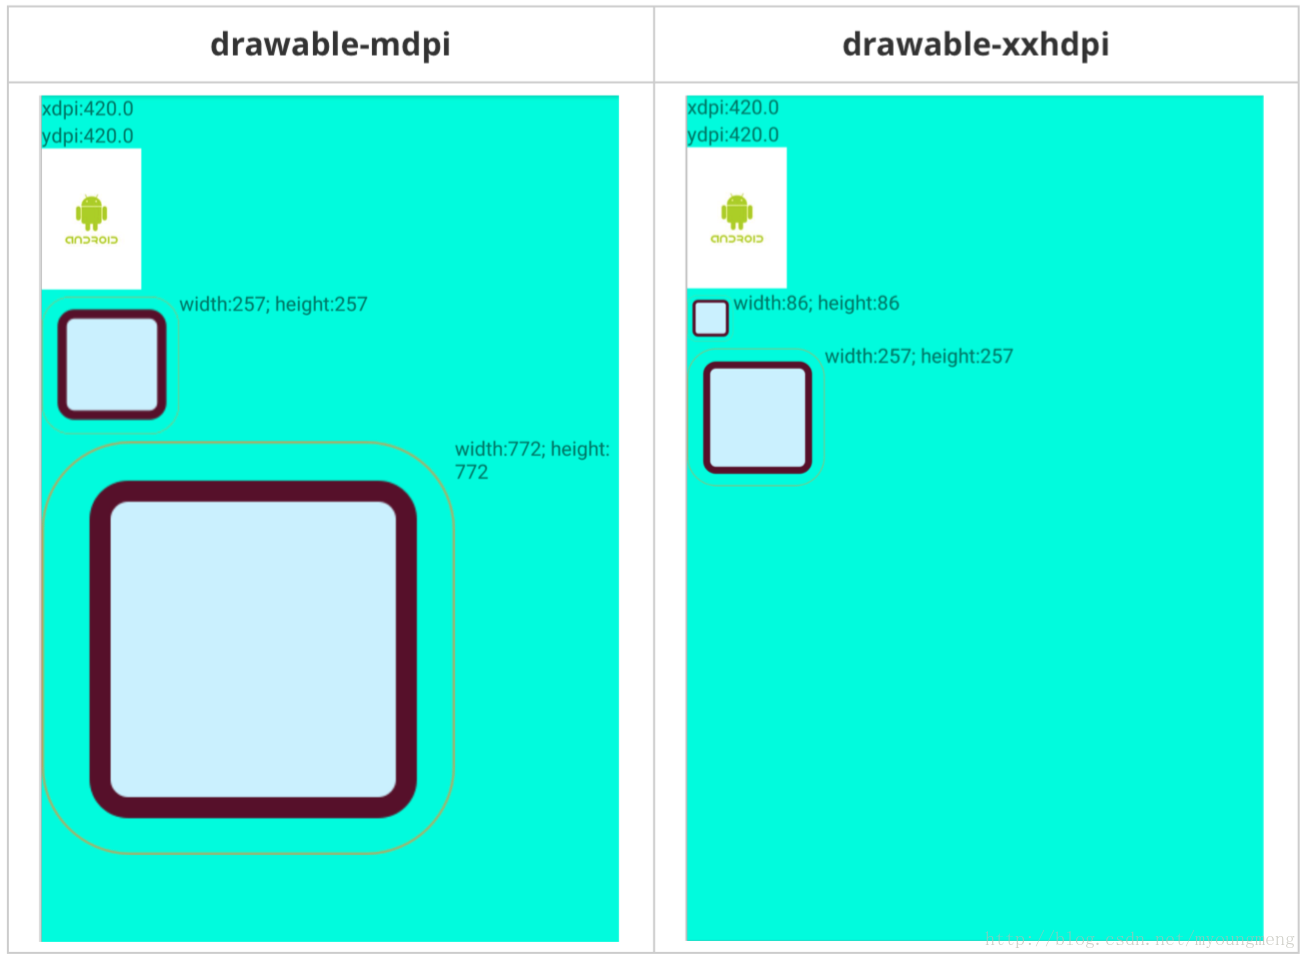 1倍圖和3倍圖在分別在drawable-mdpi和drawable-xxhdpi目錄下的顯示效果及寬高